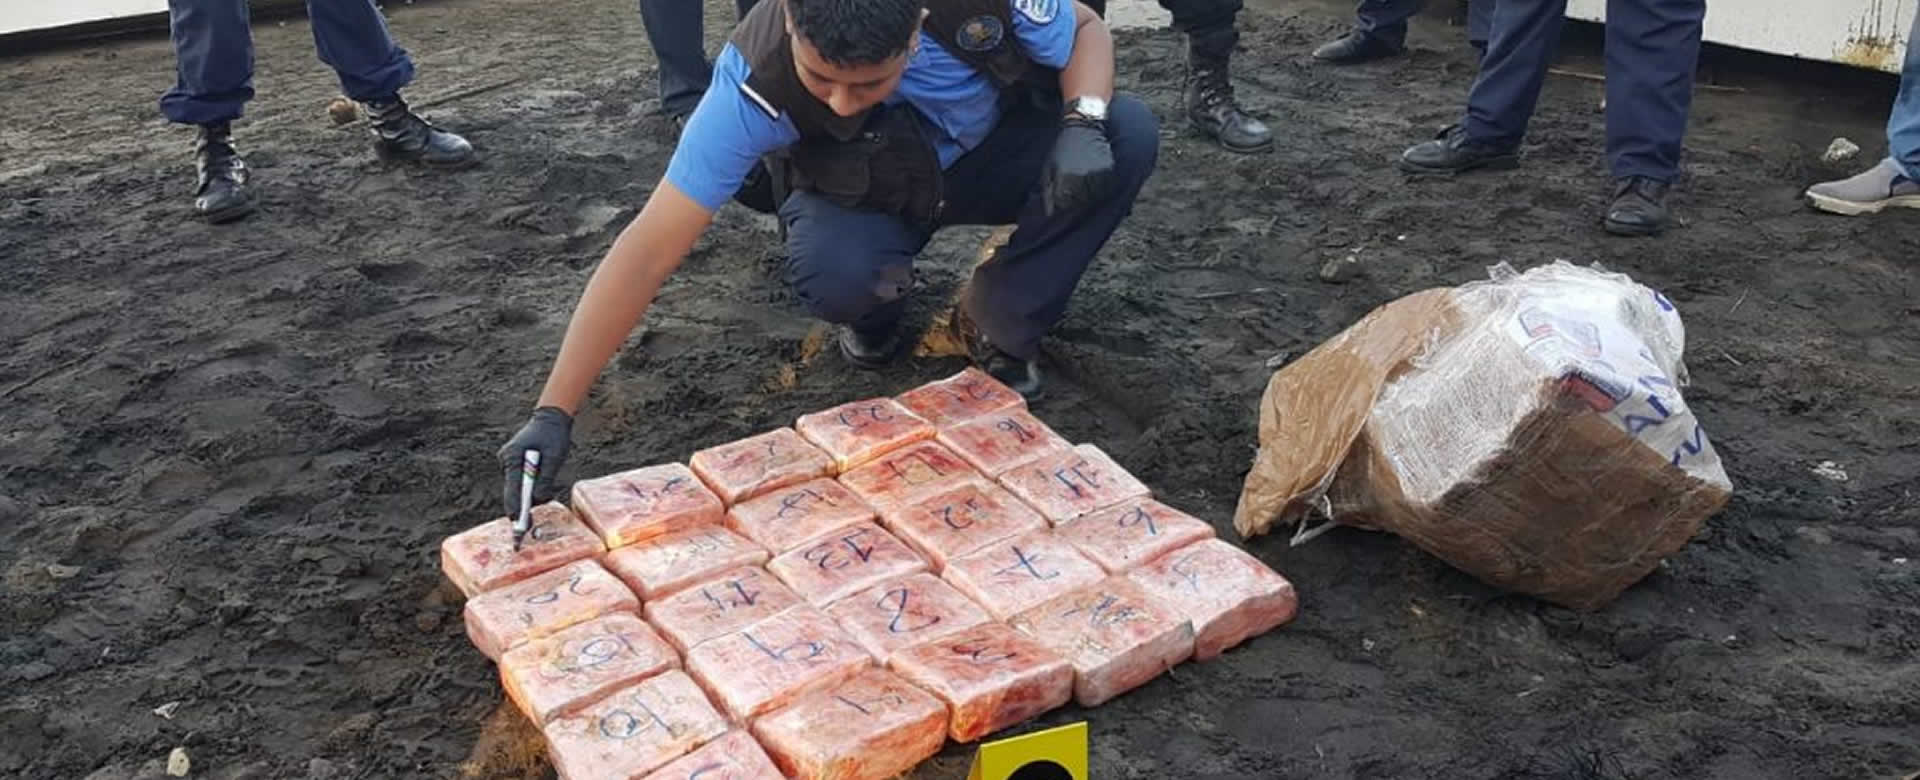 Policía Nacional incauta lancha con dólares en zona costera de El Viejo, Chinandega